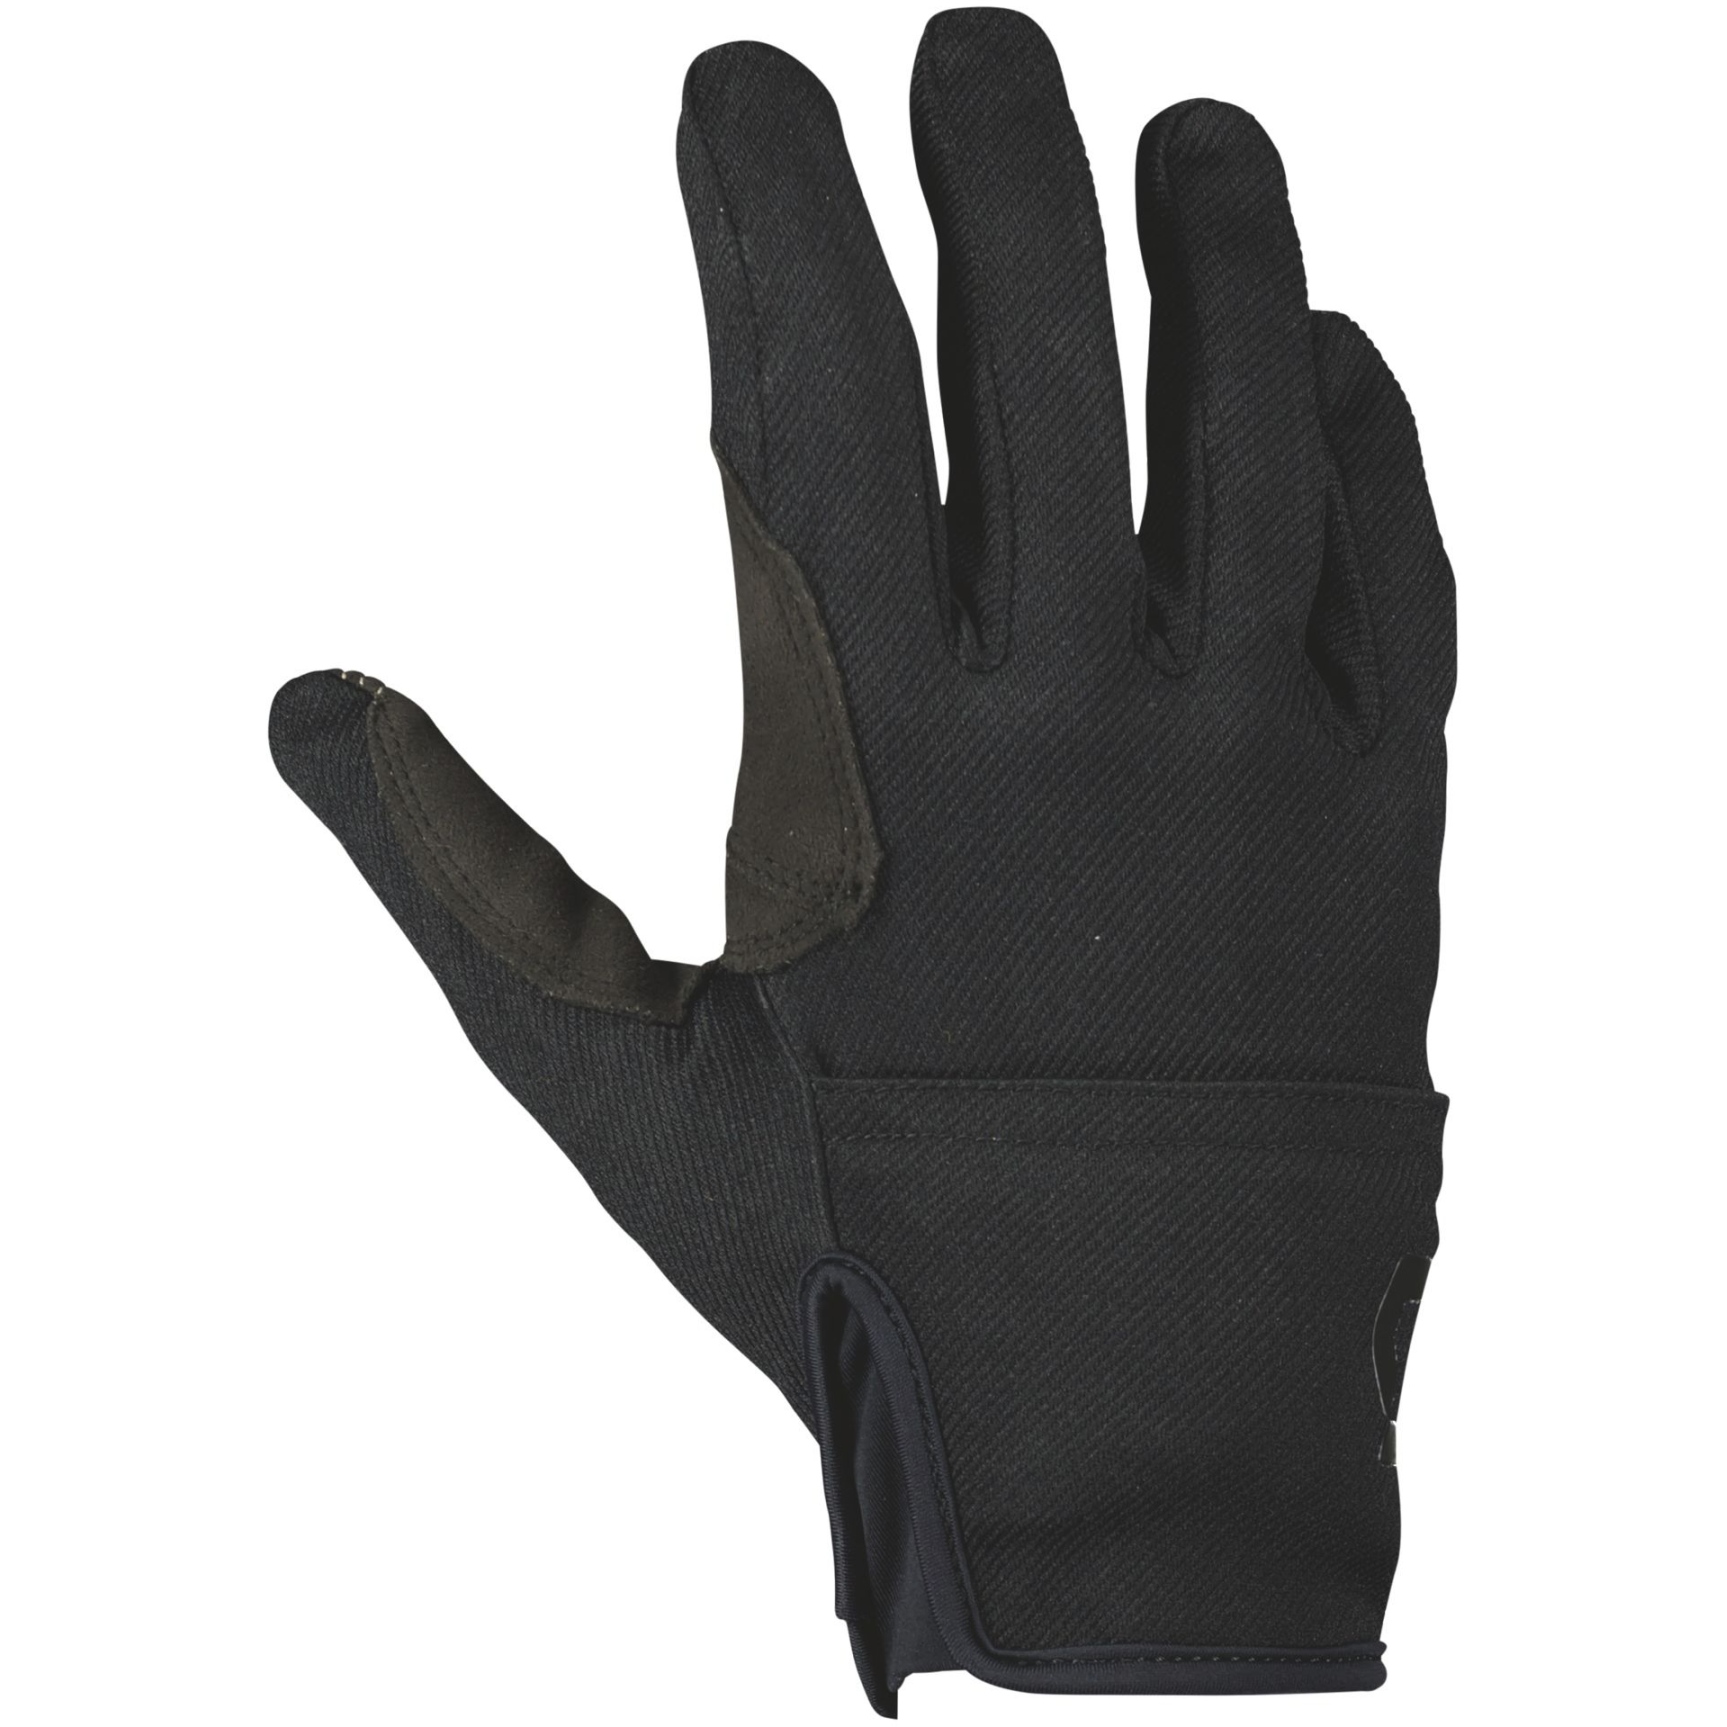 Produktbild von SCOTT Commuter Hybrid LF Handschuhe - schwarz